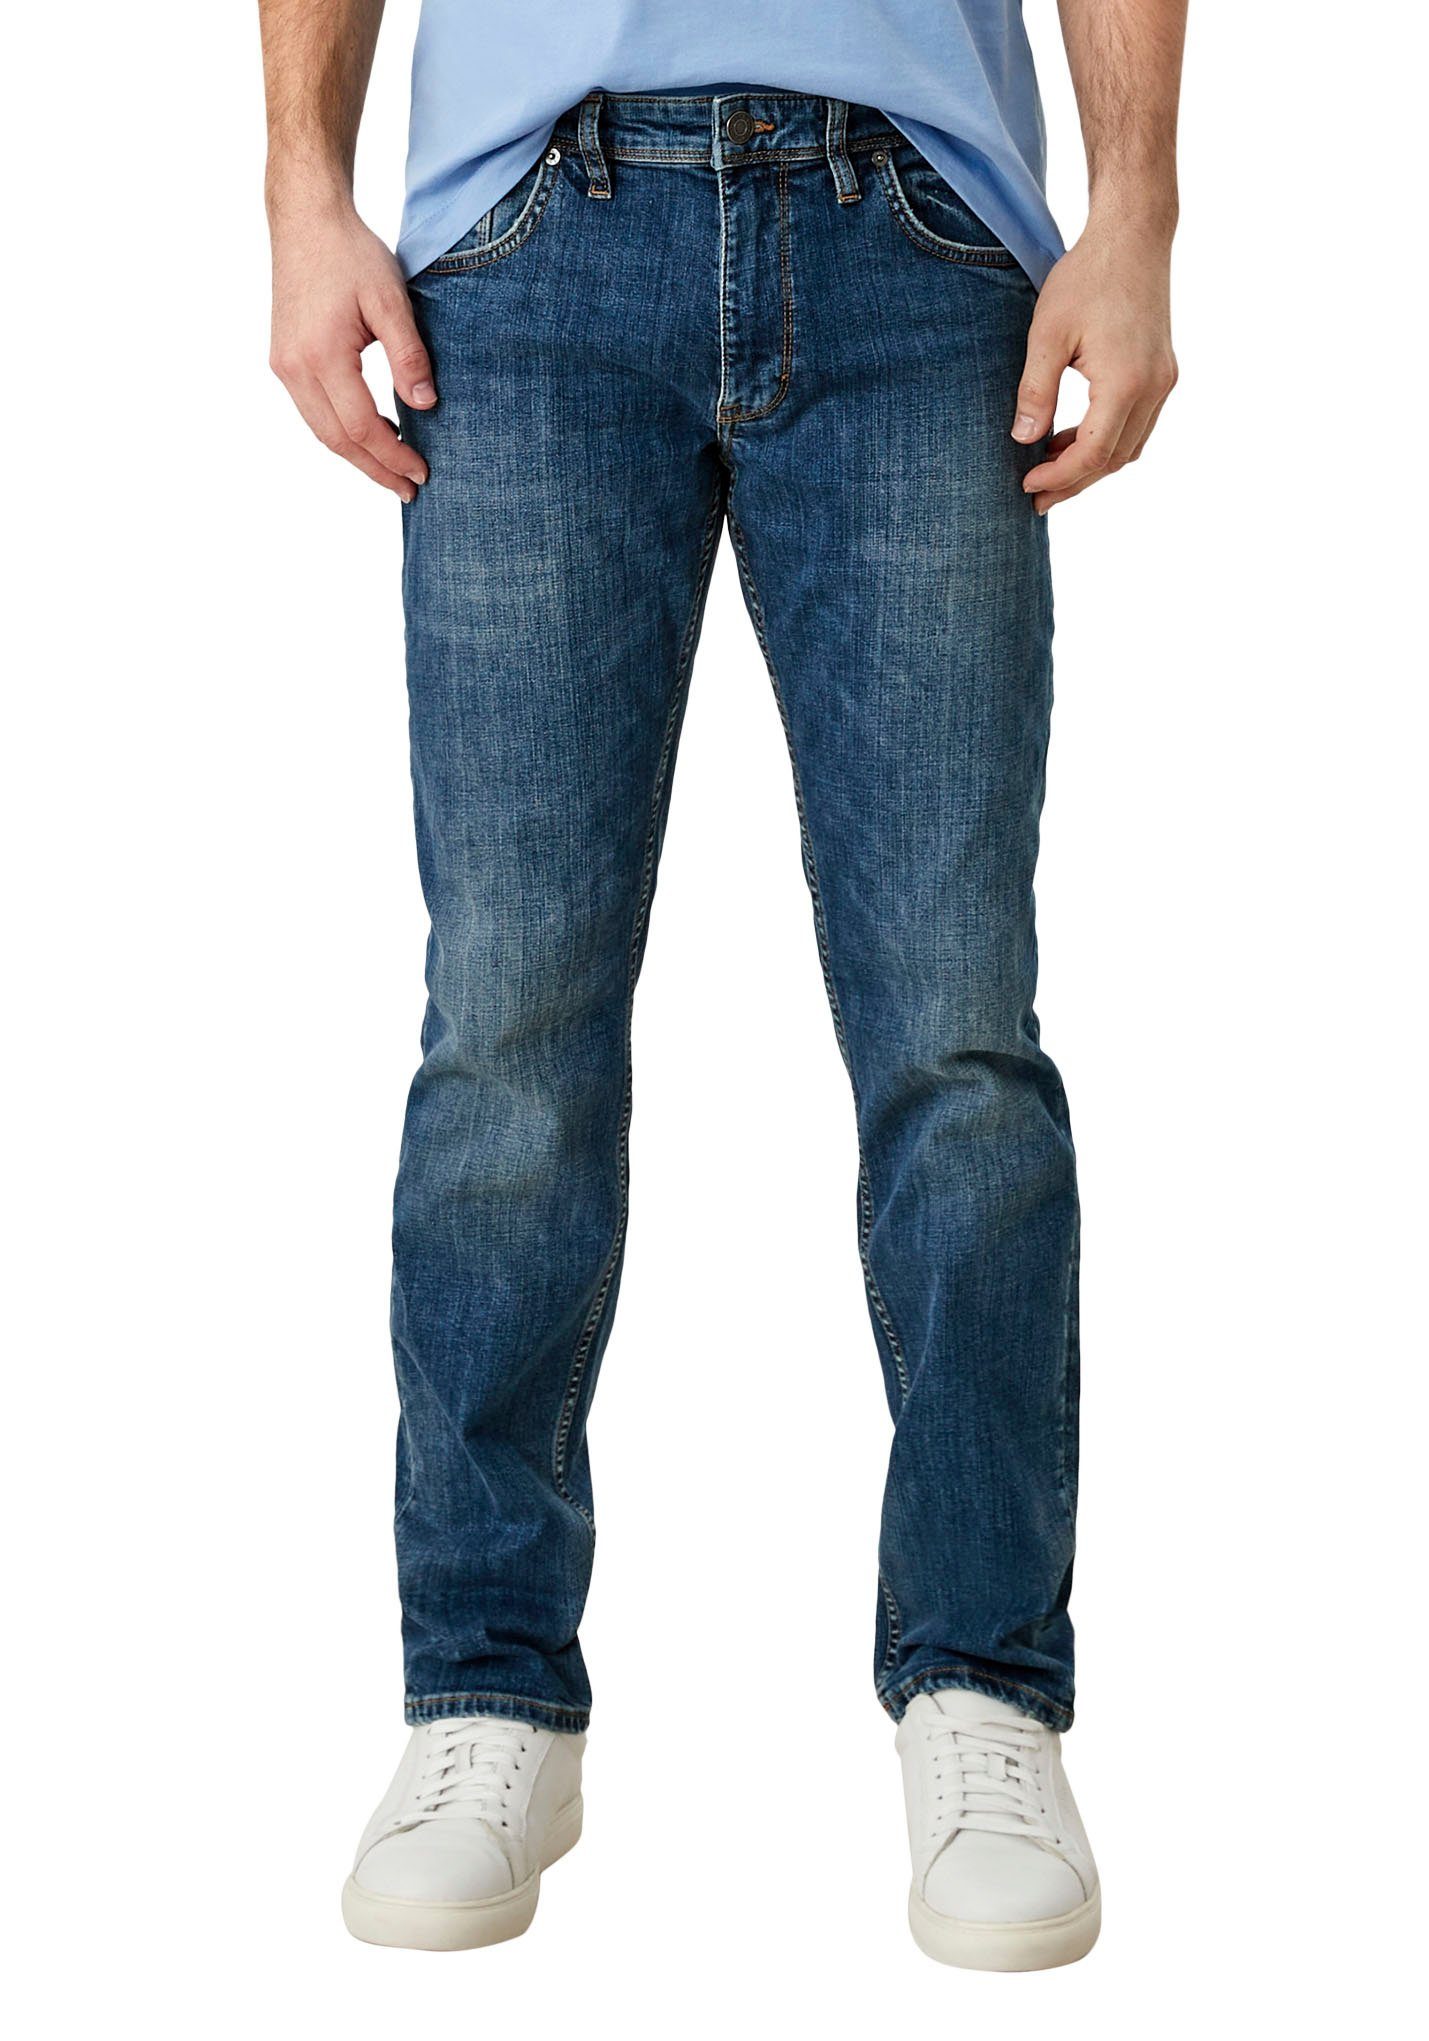 5-Pocket-Jeans s.Oliver ozeanblau mit authentischer Waschung